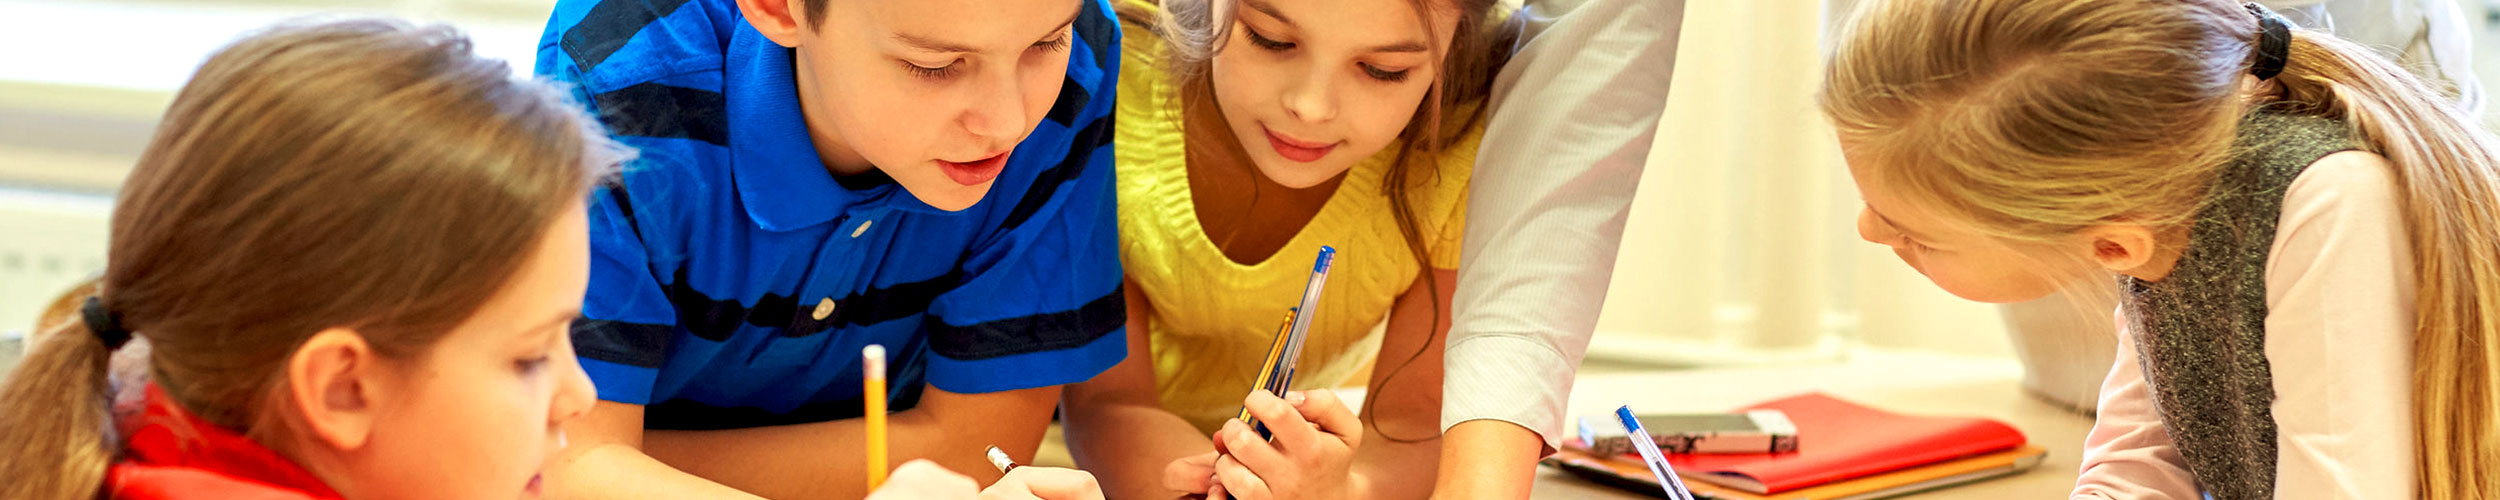 Kinder mit Stift beim gemeinsamen Schreiben